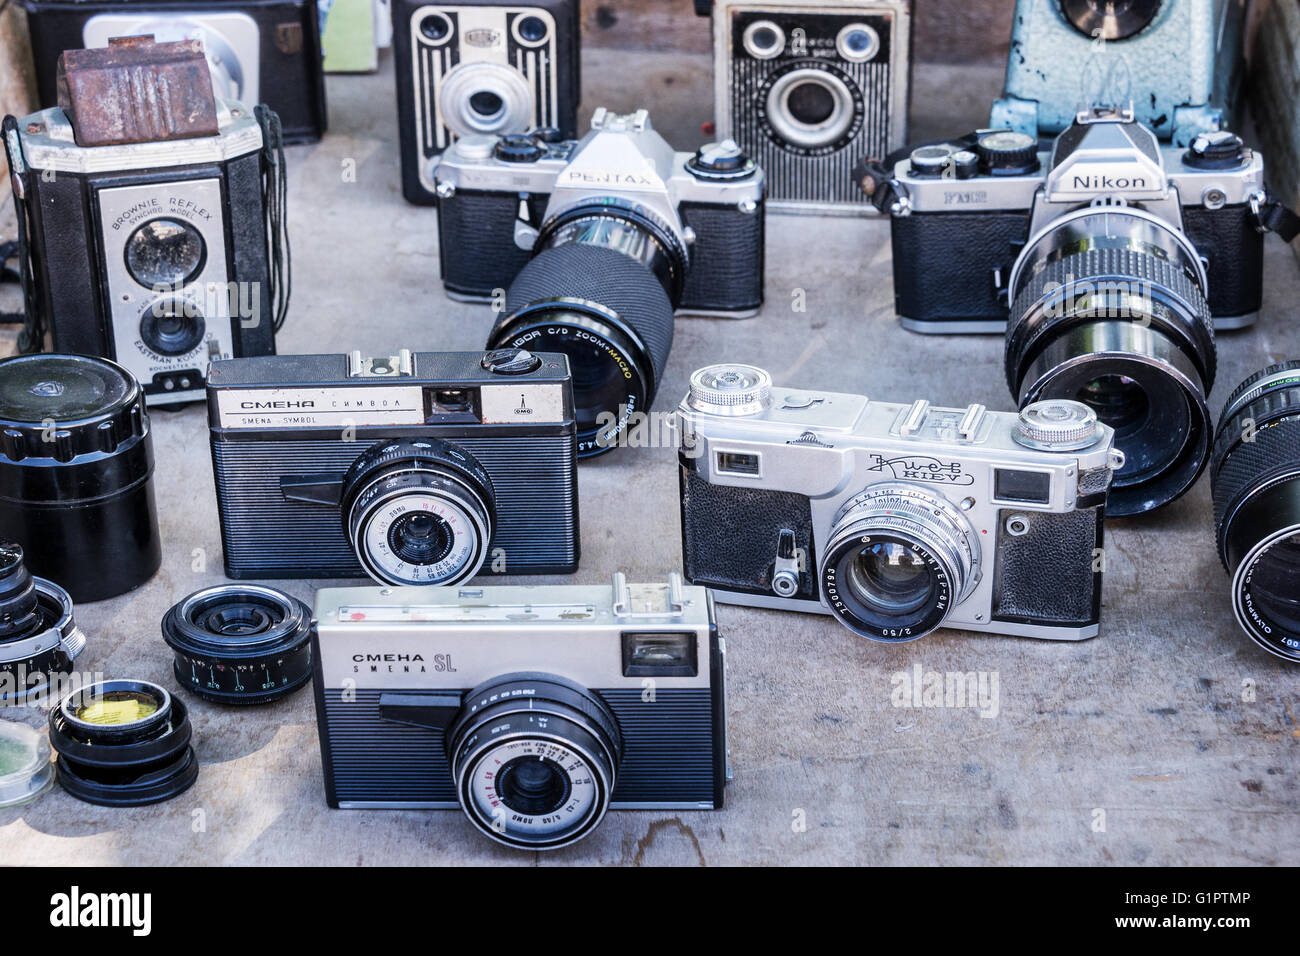 HABANA, CUBA - 18 aprile: collezione di fotocamere vintage su un mercato delle pulci, il 18 aprile 2016 a L'Avana Vecchia Foto Stock